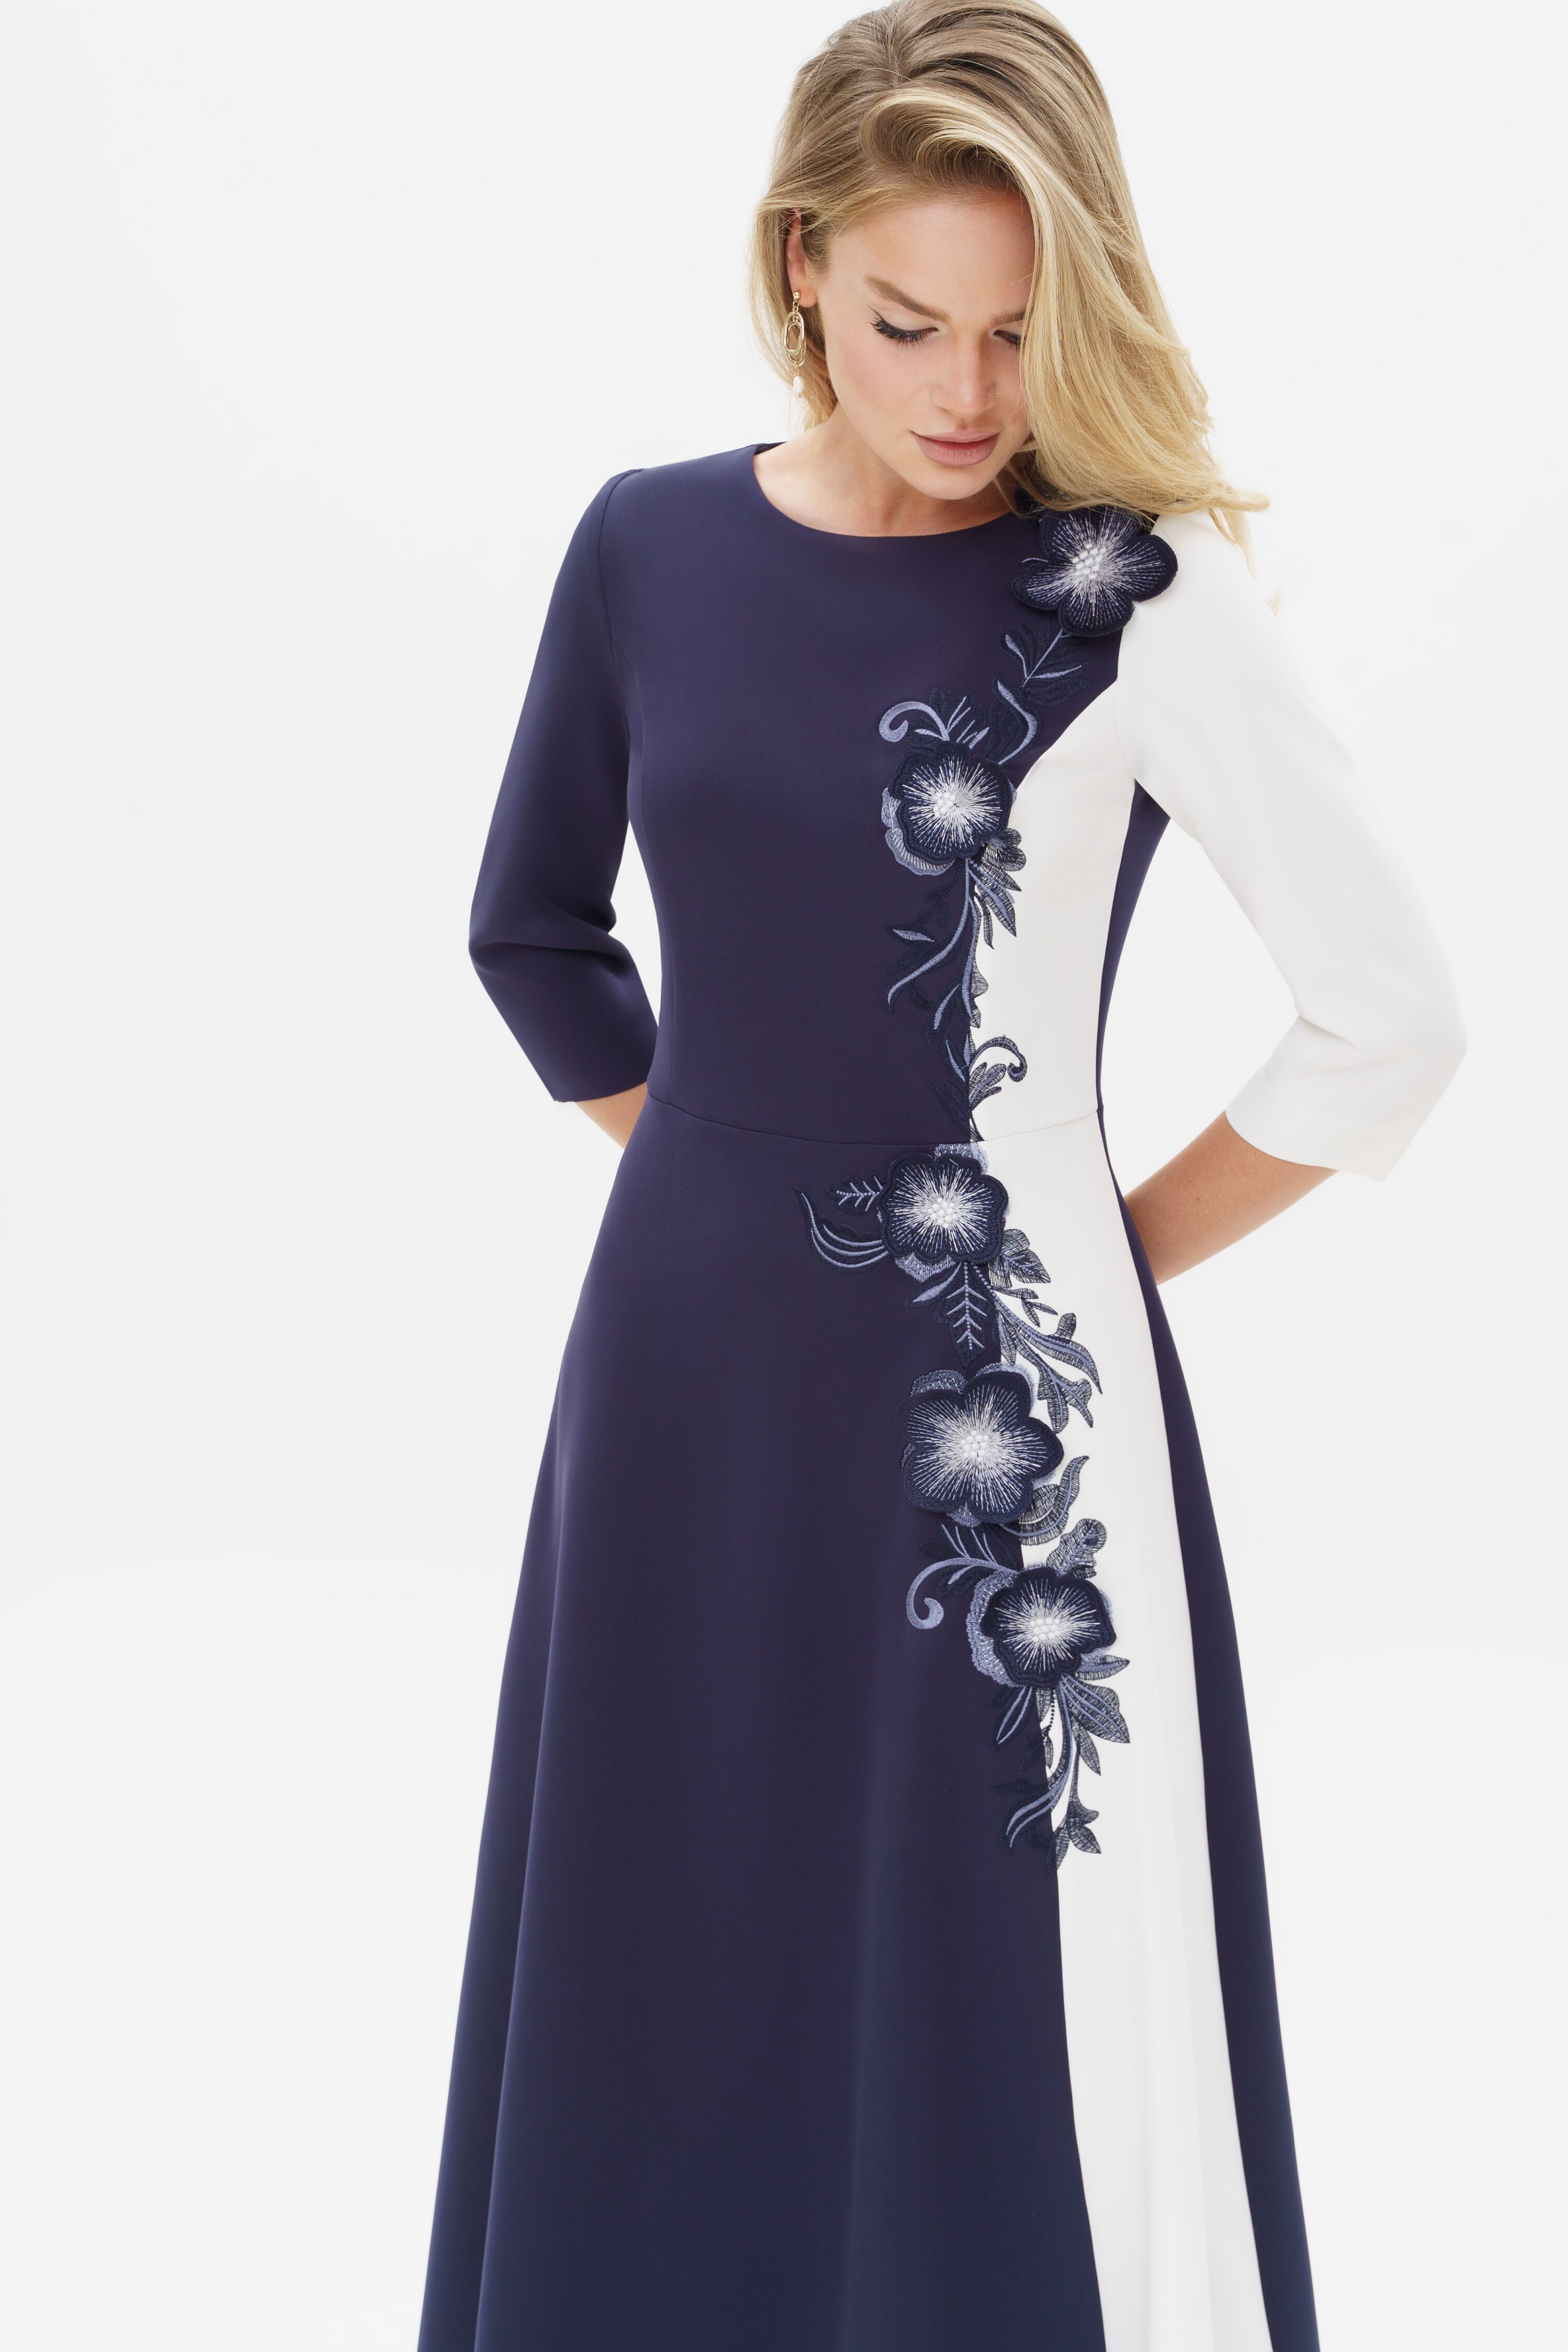 Купить платье URS 24-310-1 синее женское с вышивкой